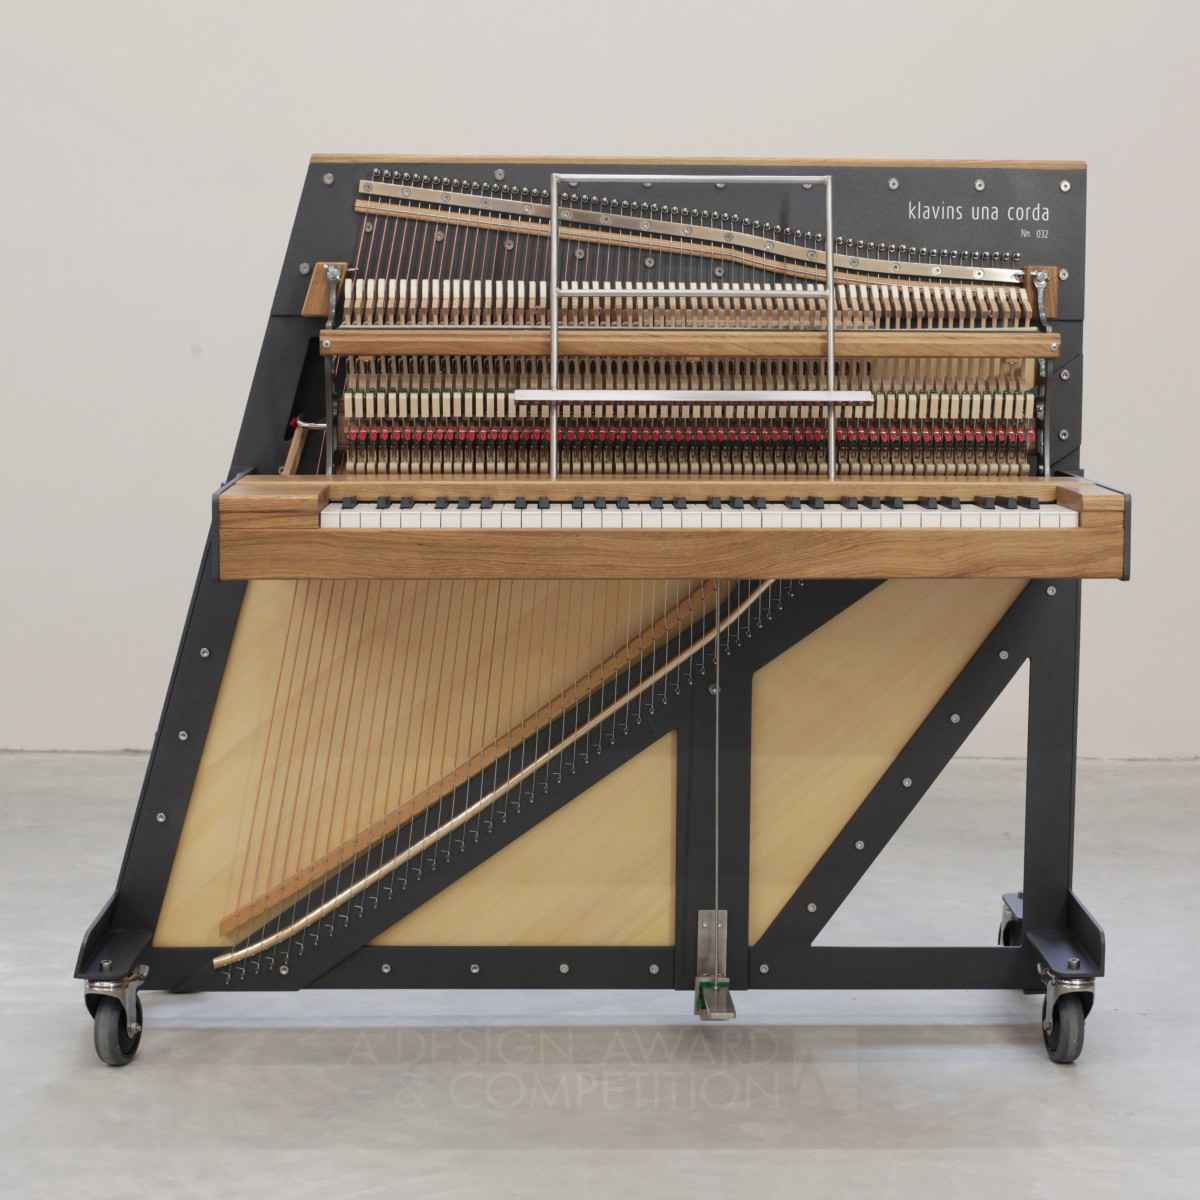 Una Corda <b>Acoustic Piano